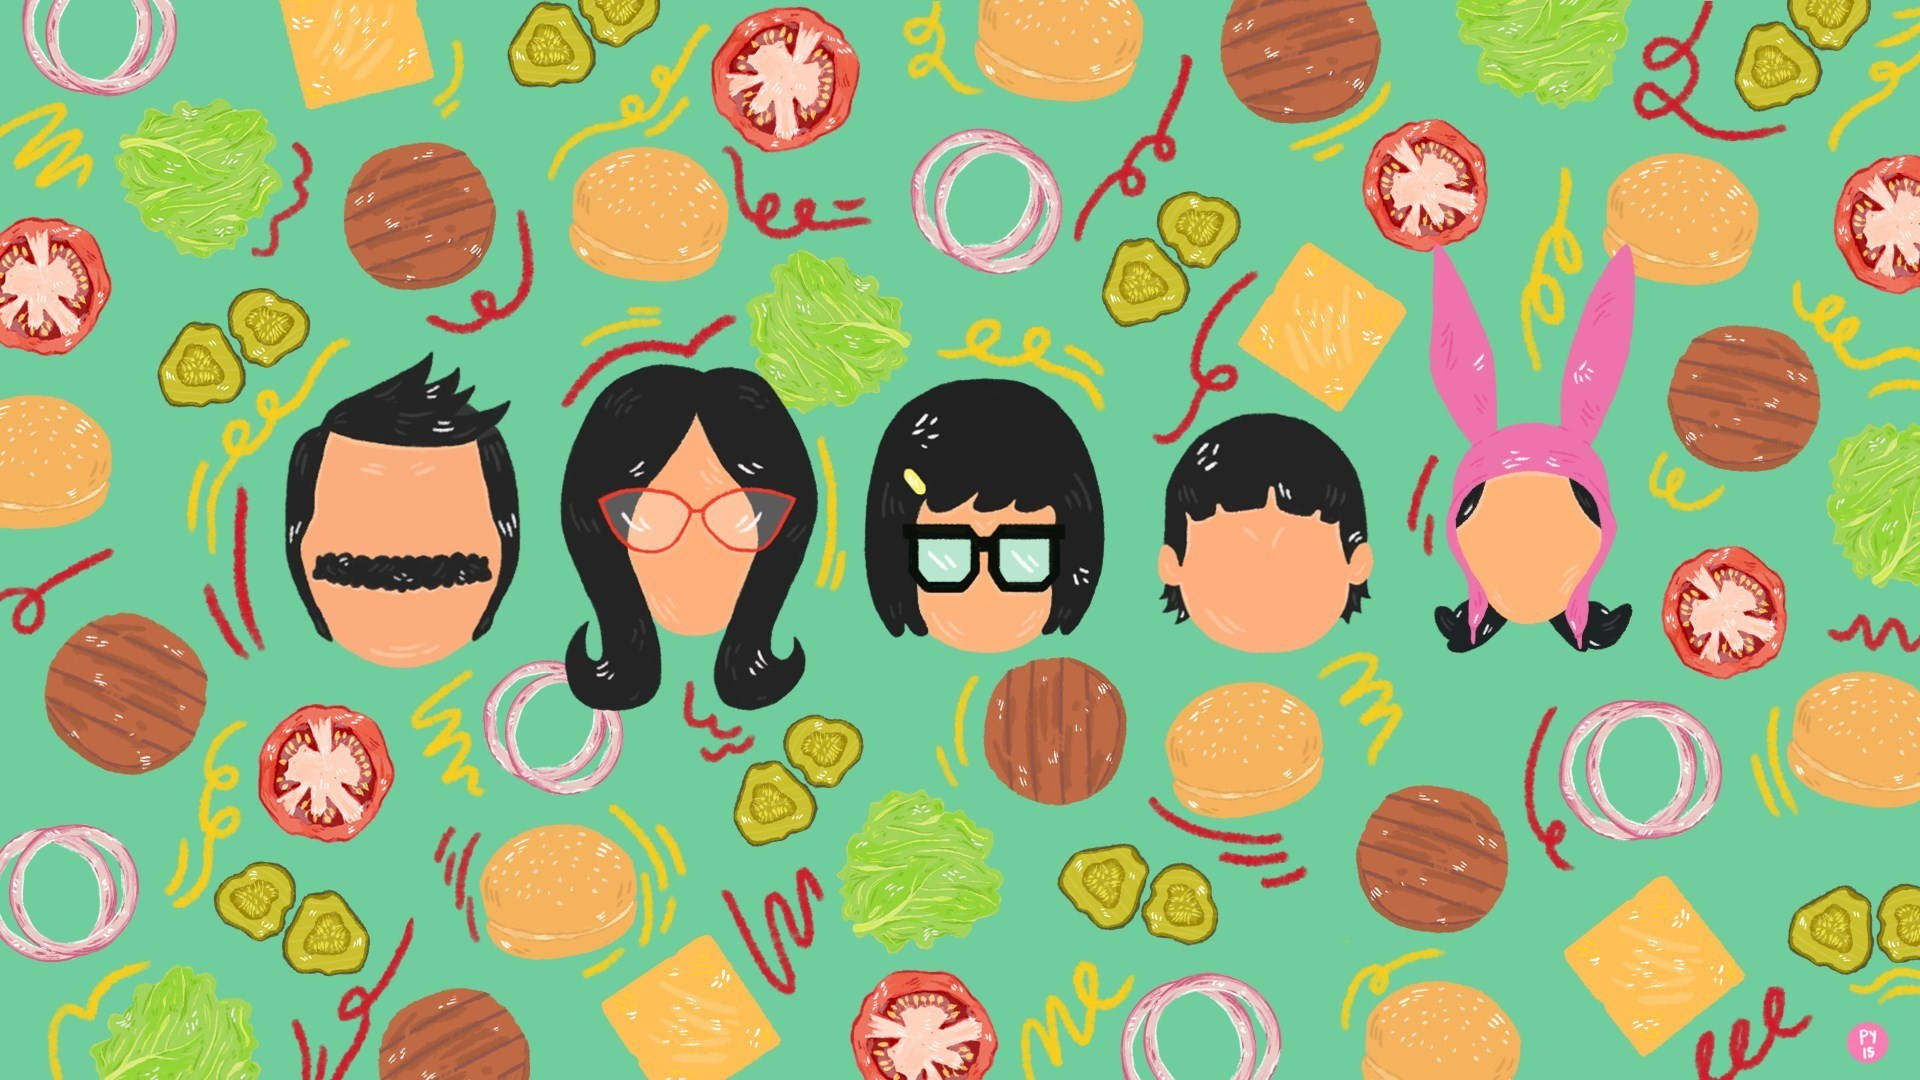 Fun Bobs Burgers Vector Art Wallpaper